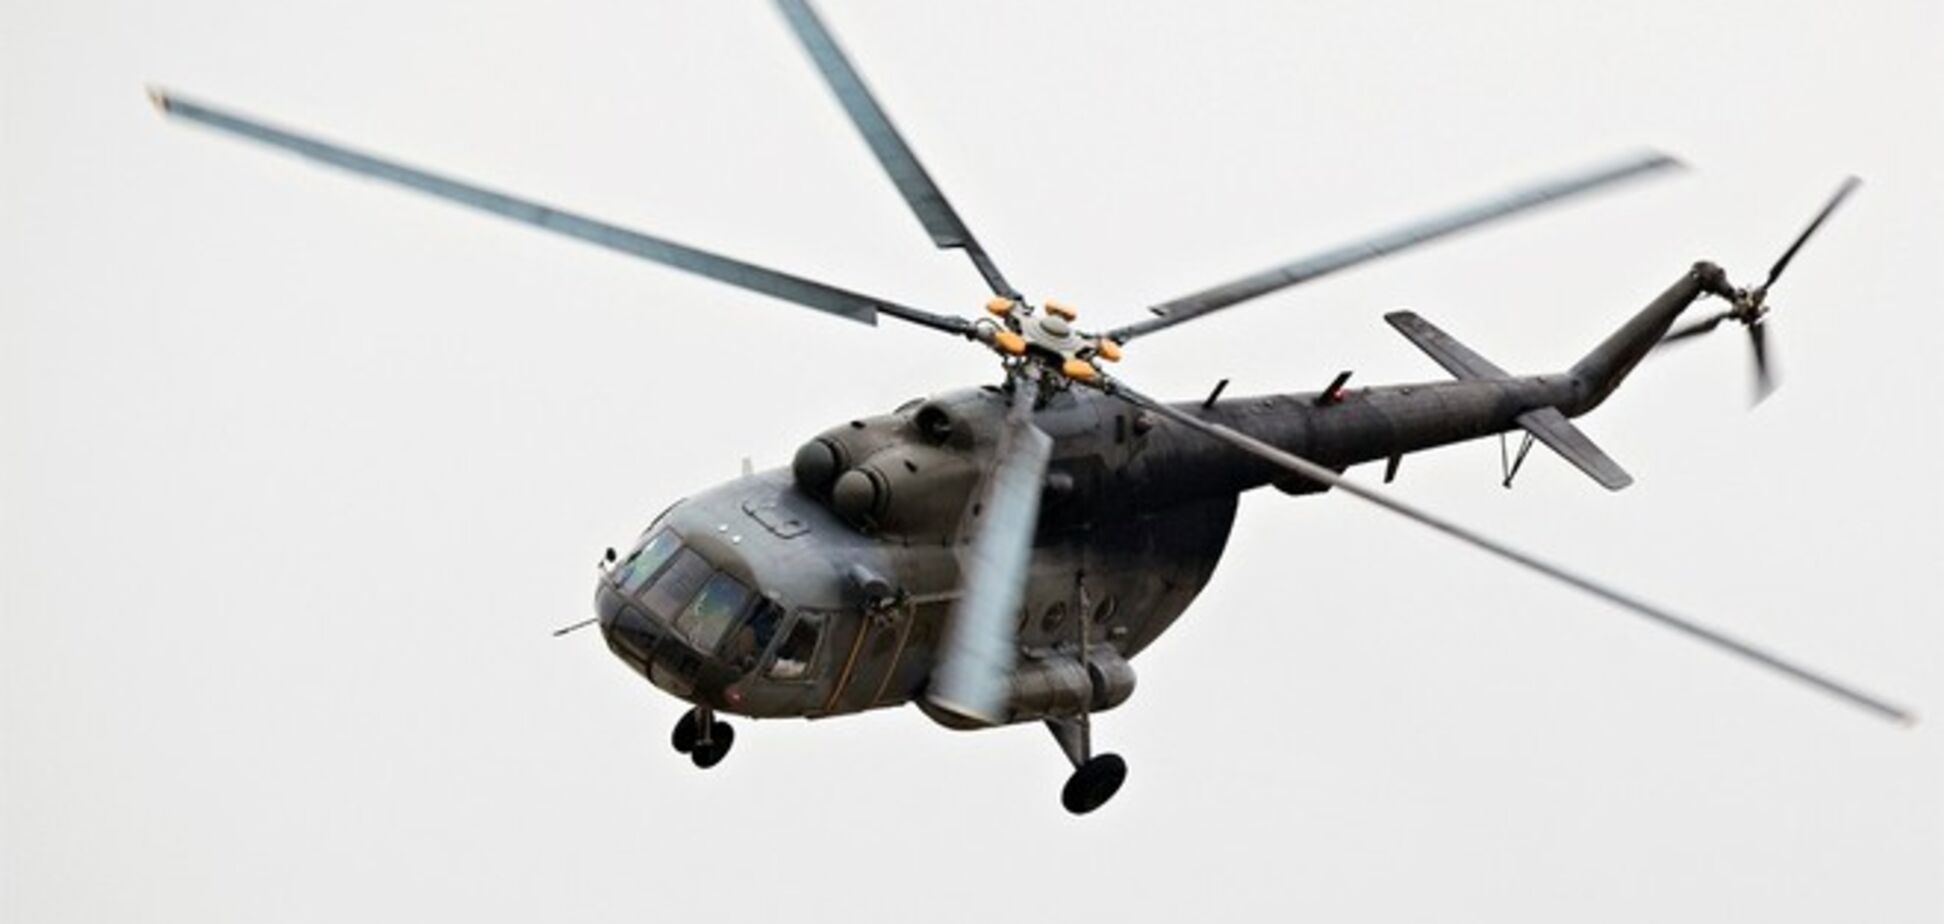 Азербайджан збив вірменський бойовий вертоліт. Йде перестрілка з автоматів